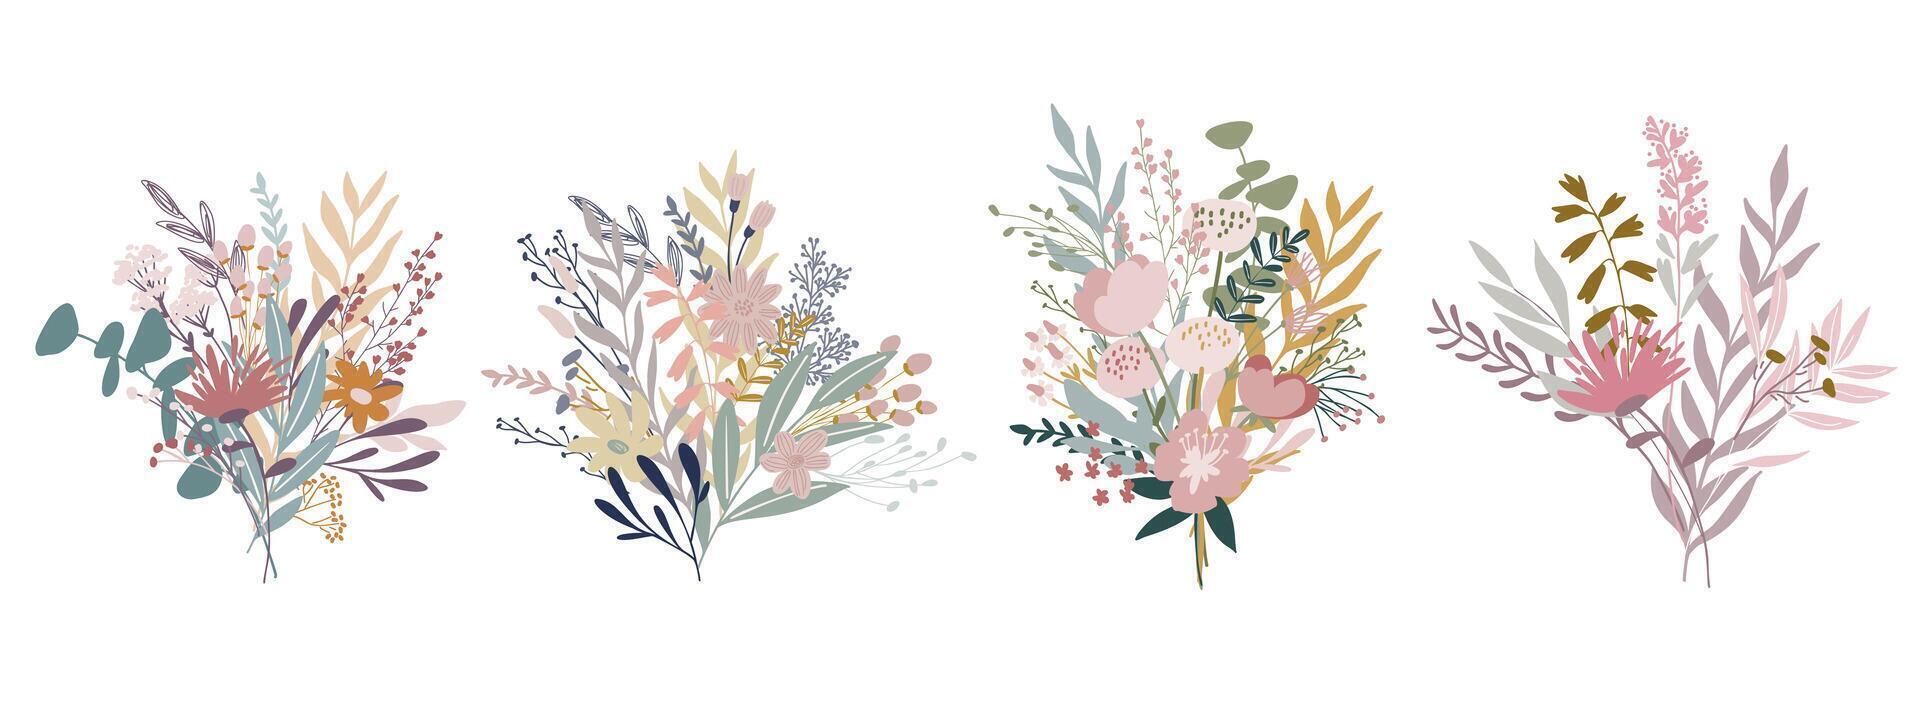 divers bloemen boeketten geregeld kant door kant, pastel kleuren vector